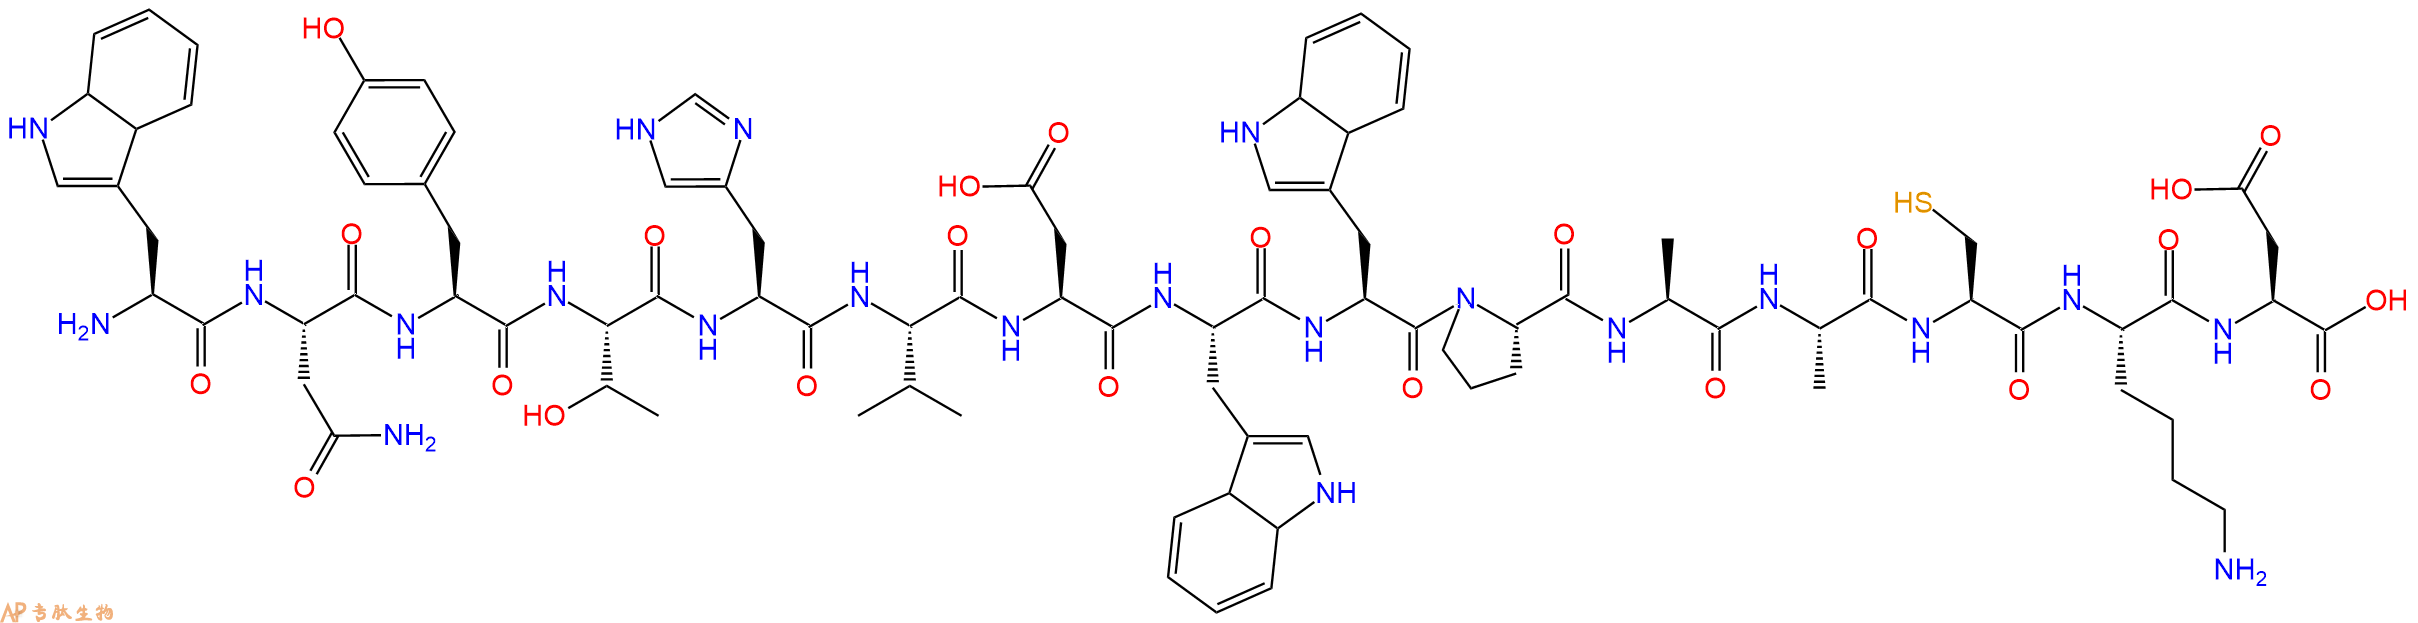 多肽WNYTHVDWWPAACKD的参数和合成路线|三字母为Trp-Asn-Tyr-Thr-His-